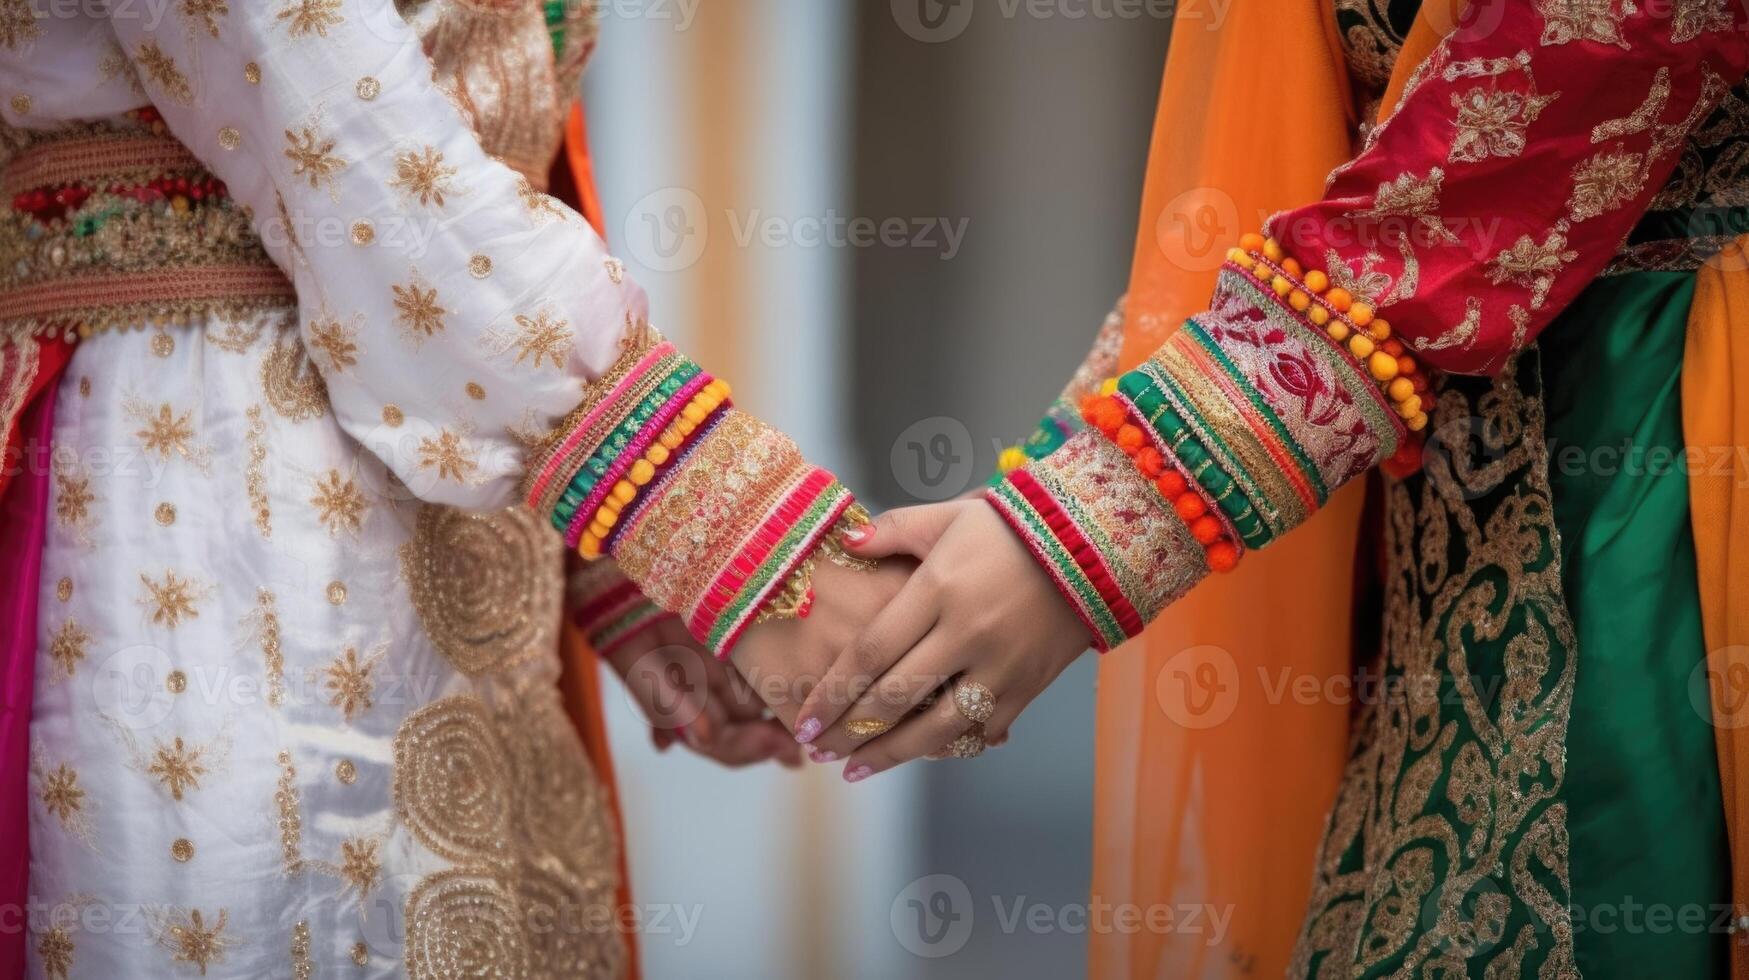 ritagliata Immagine di amichevole o casuale stretta di mano fra Arabo donne nel loro tradizionale abbigliamento. foto